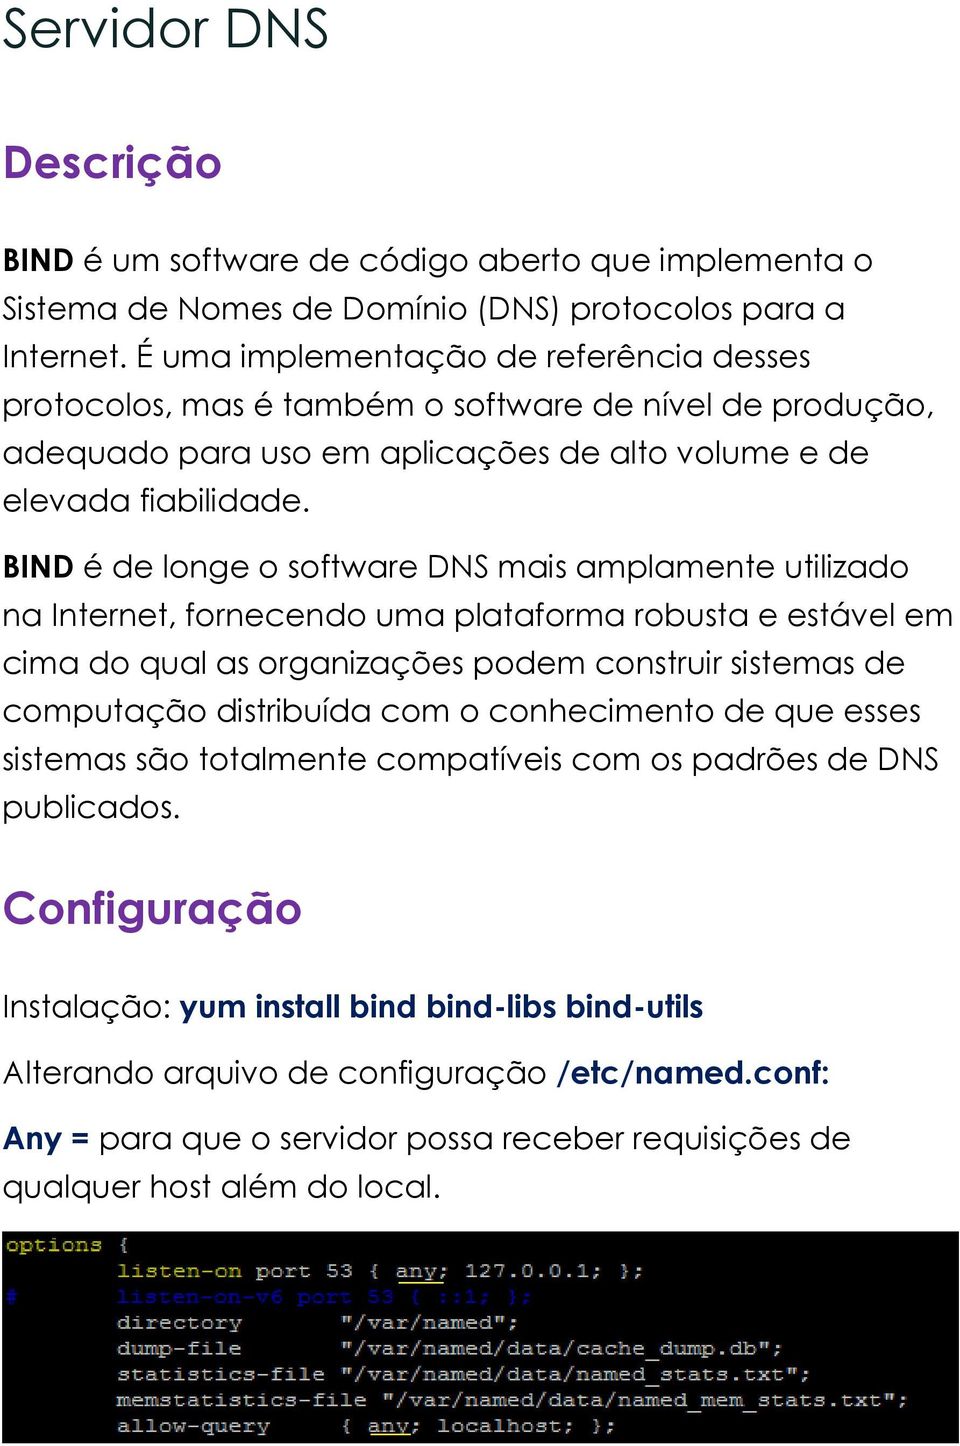 BIND é de longe o software DNS mais amplamente utilizado na Internet, fornecendo uma plataforma robusta e estável em cima do qual as organizações podem construir sistemas de computação distribuída